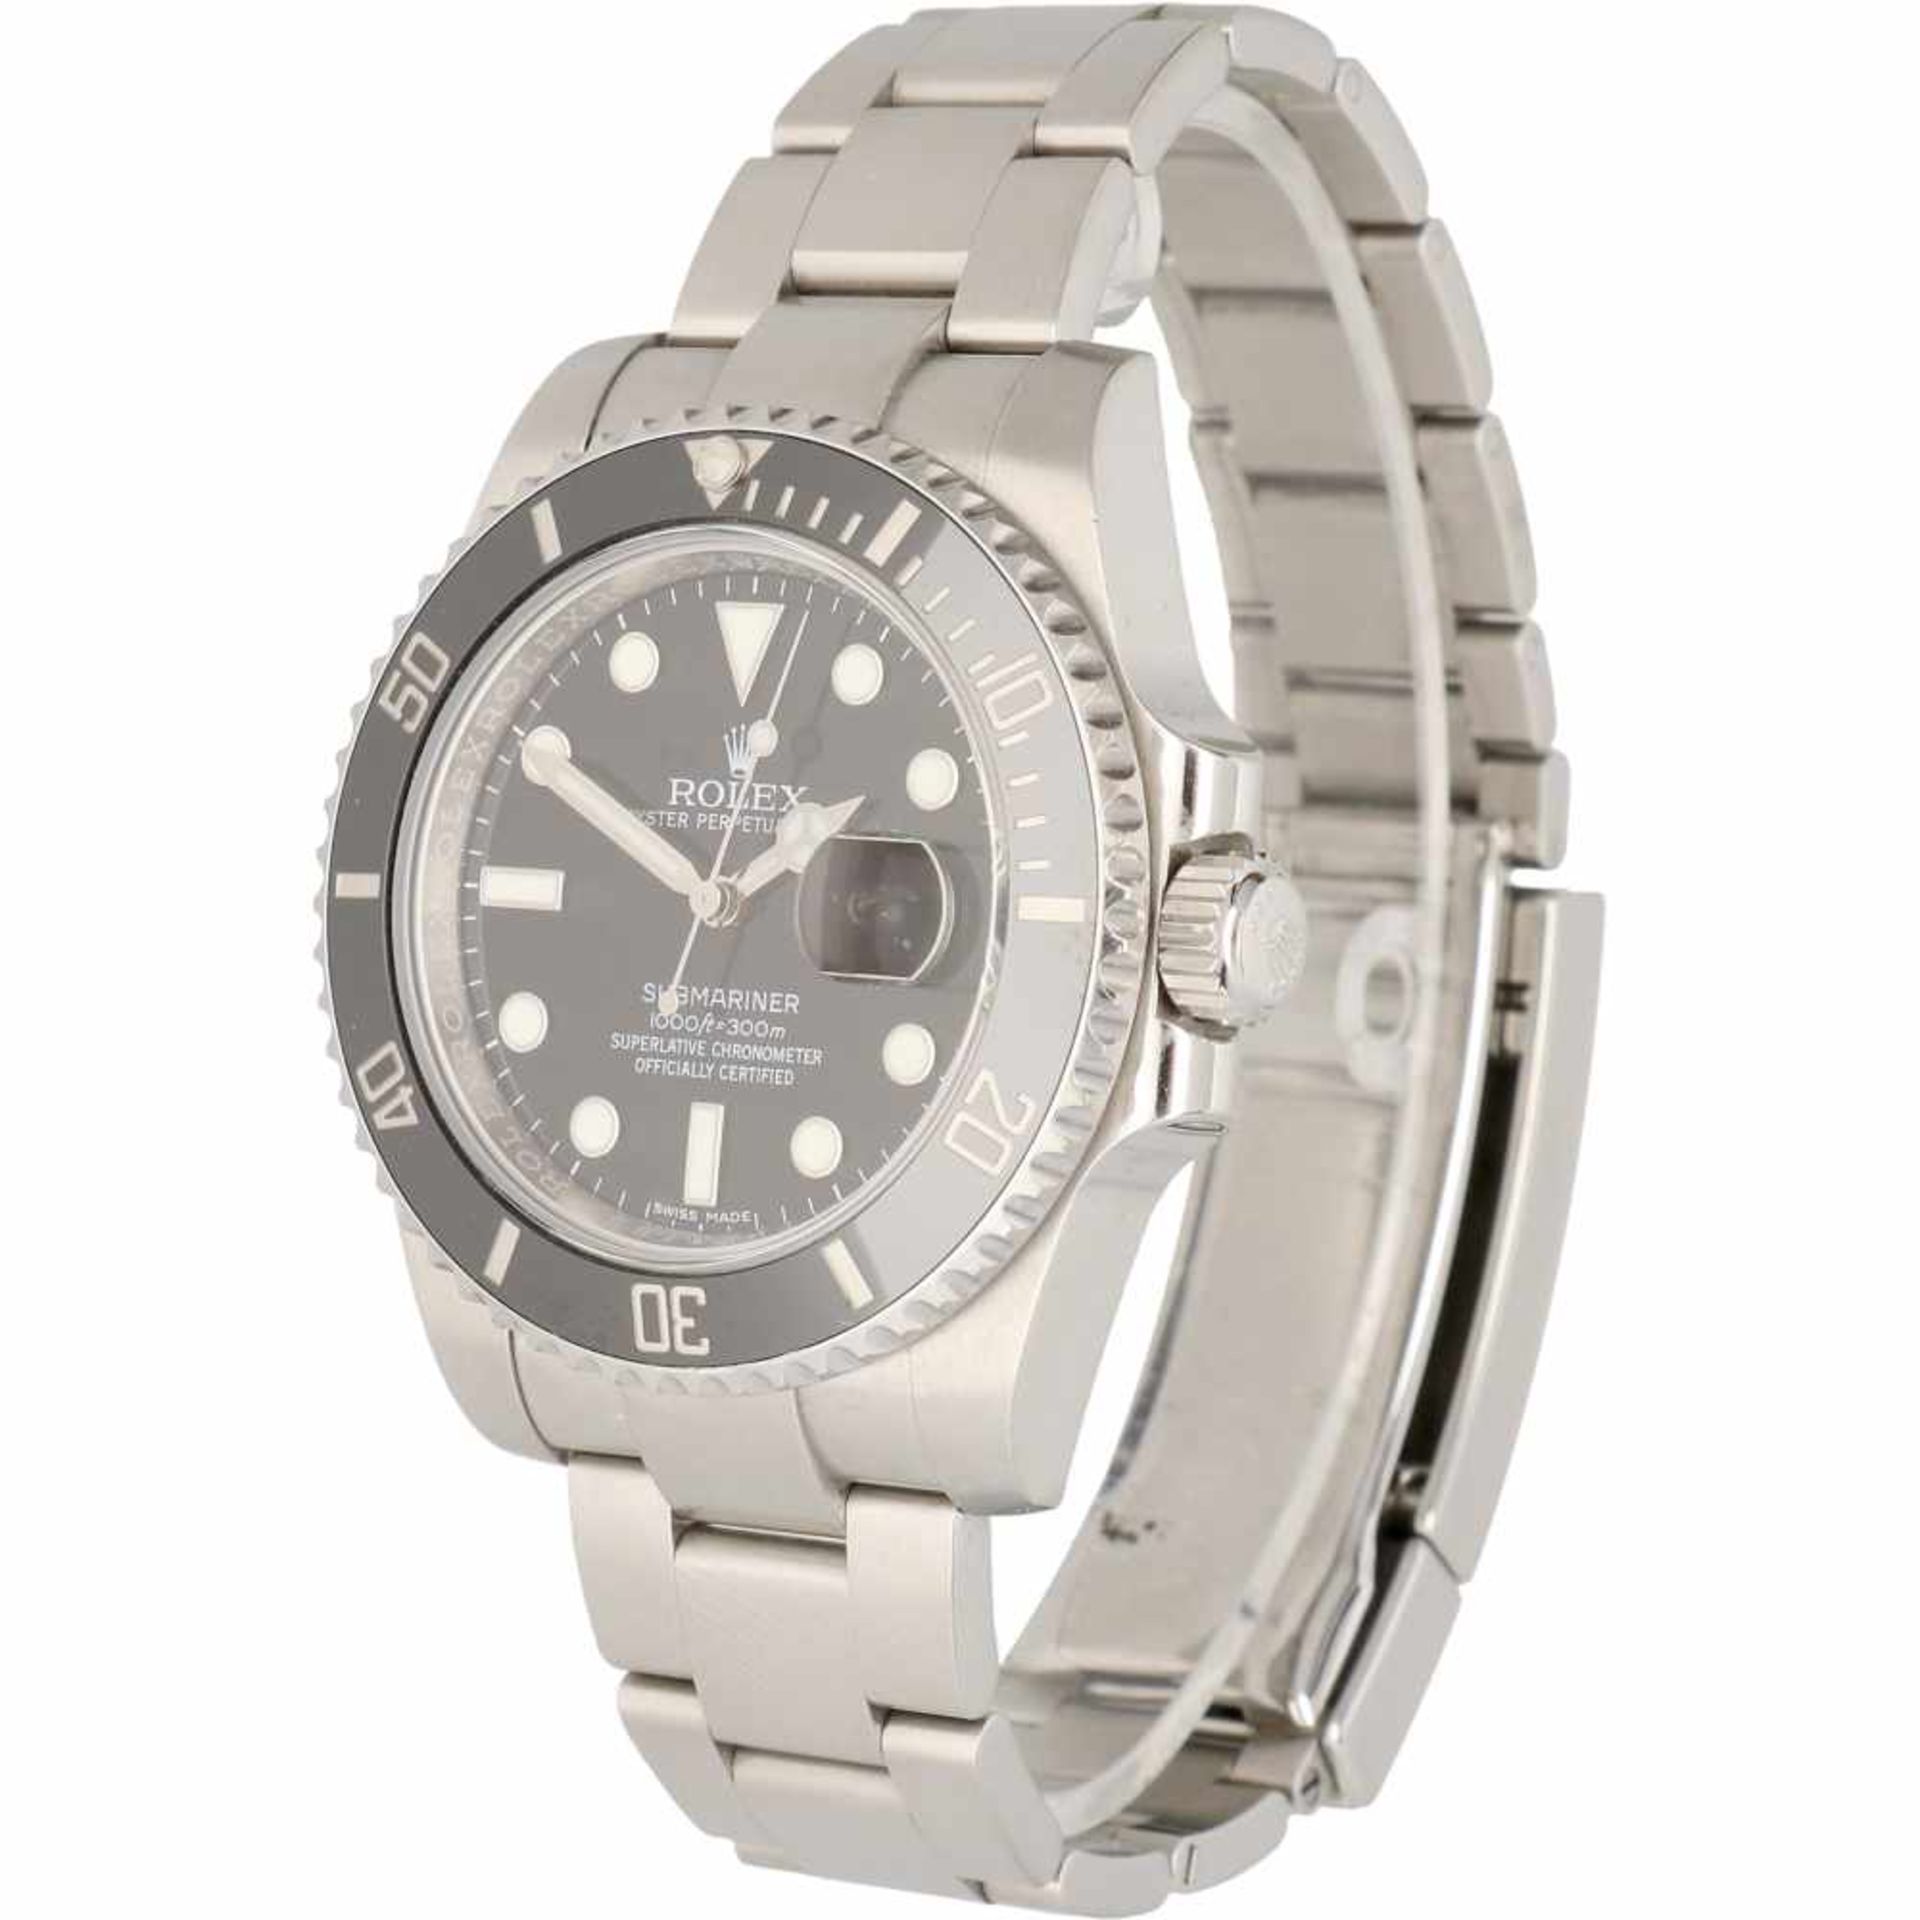 Rolex Submariner 116610 - Men's watch - Automatic - Ca. 2011. - Bild 2 aus 6